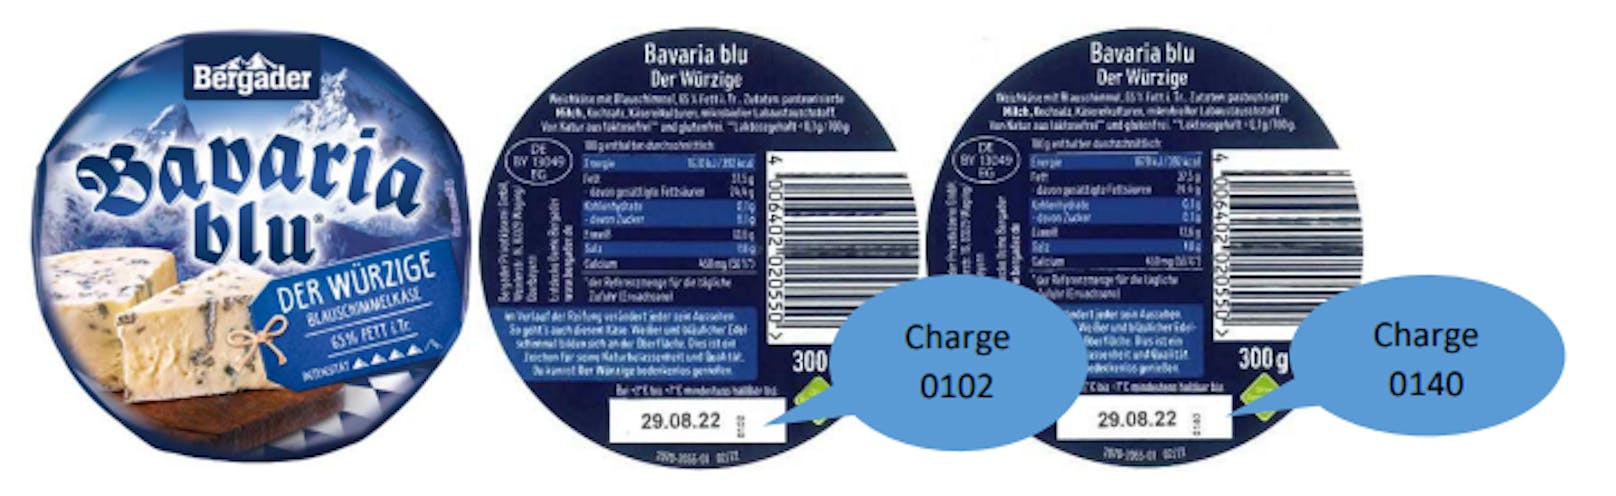 Listerien-Gefahr!&nbsp;Bergader ruft seinen Käse "Bavaria blu - Der Würzige" zurück.